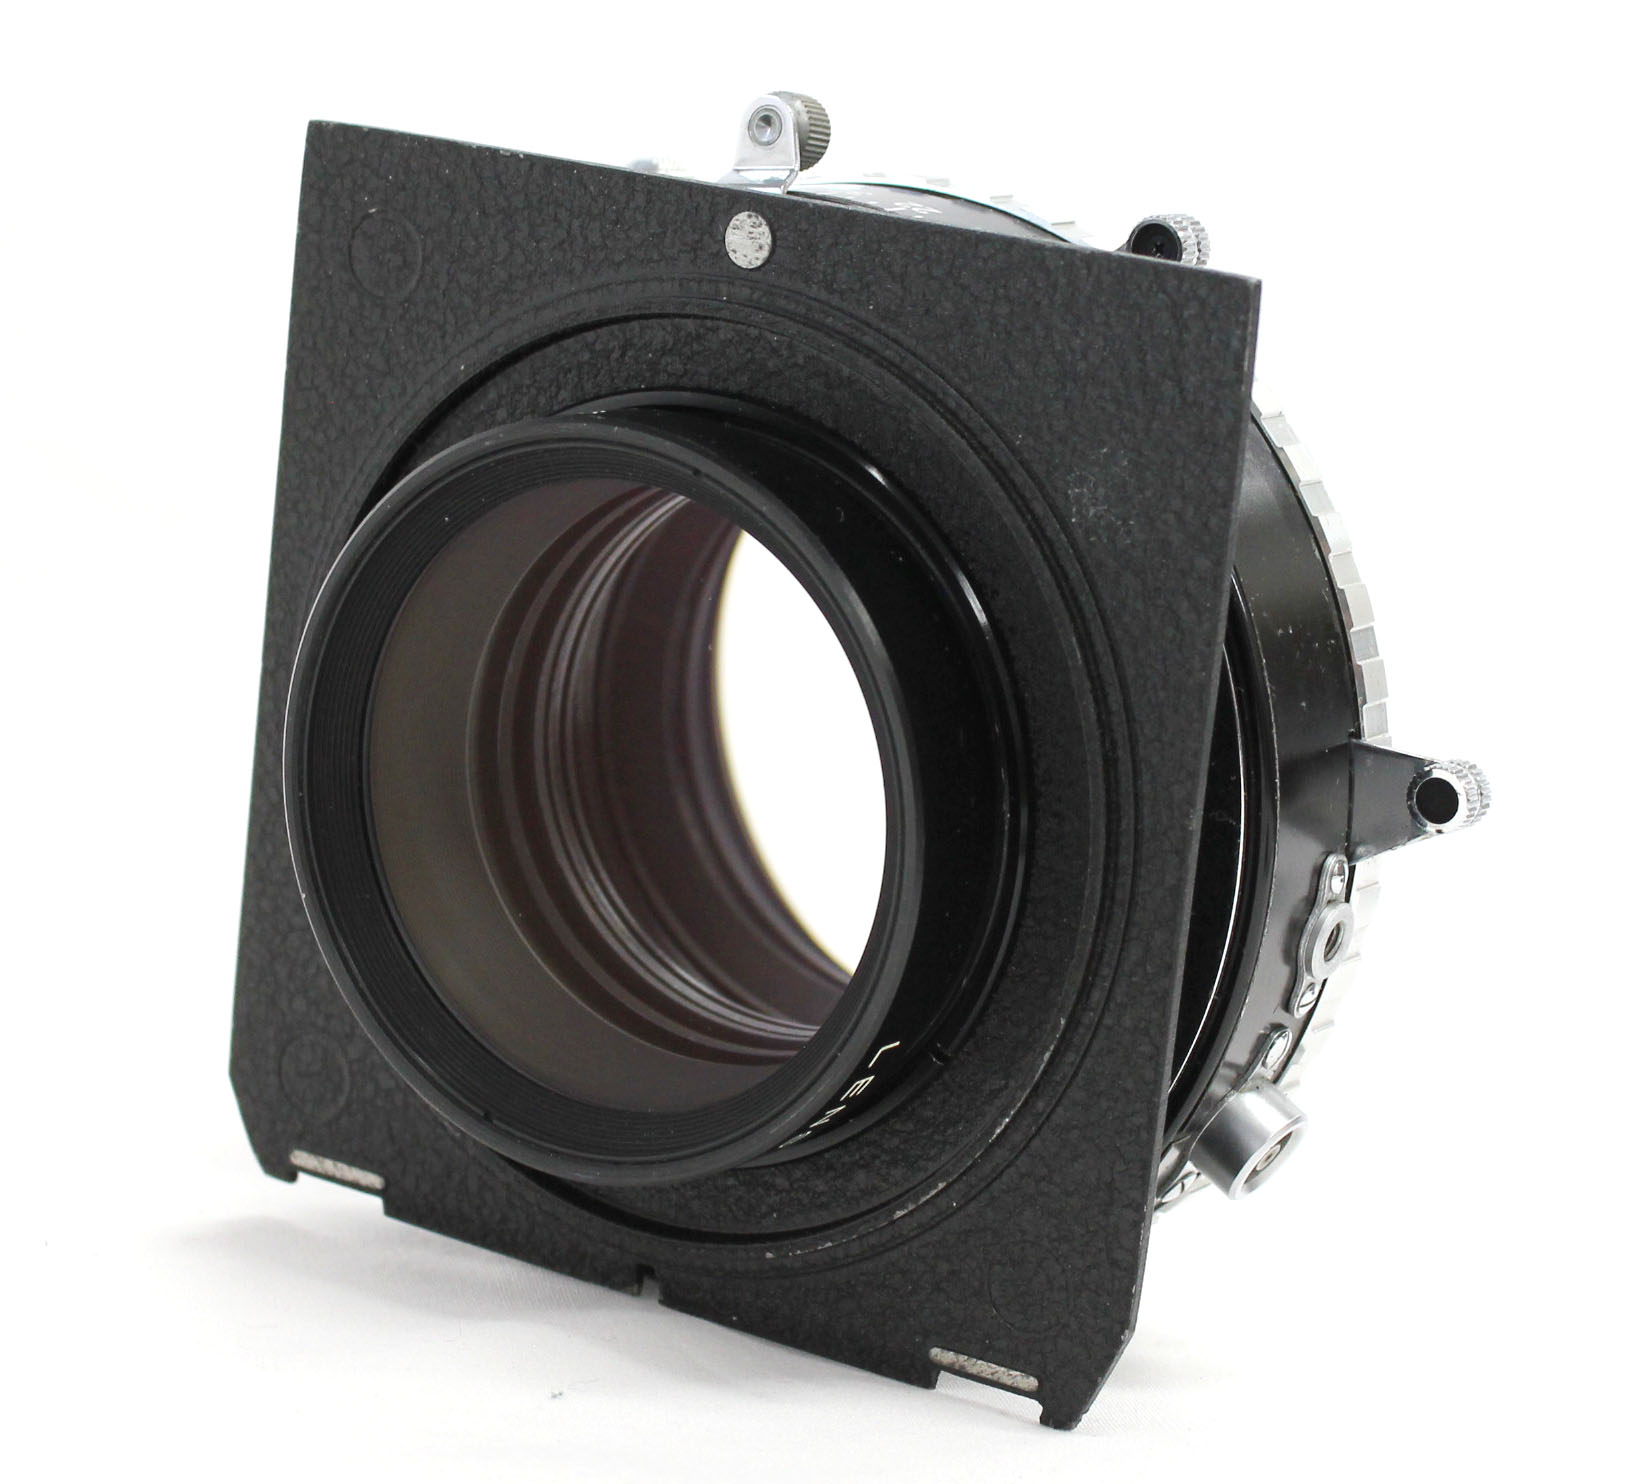  Fuji Fujinon C 600mm F/11.5 4x5 8x10 Large Format Lens Copal No.3 Shutter from Japan Photo 3